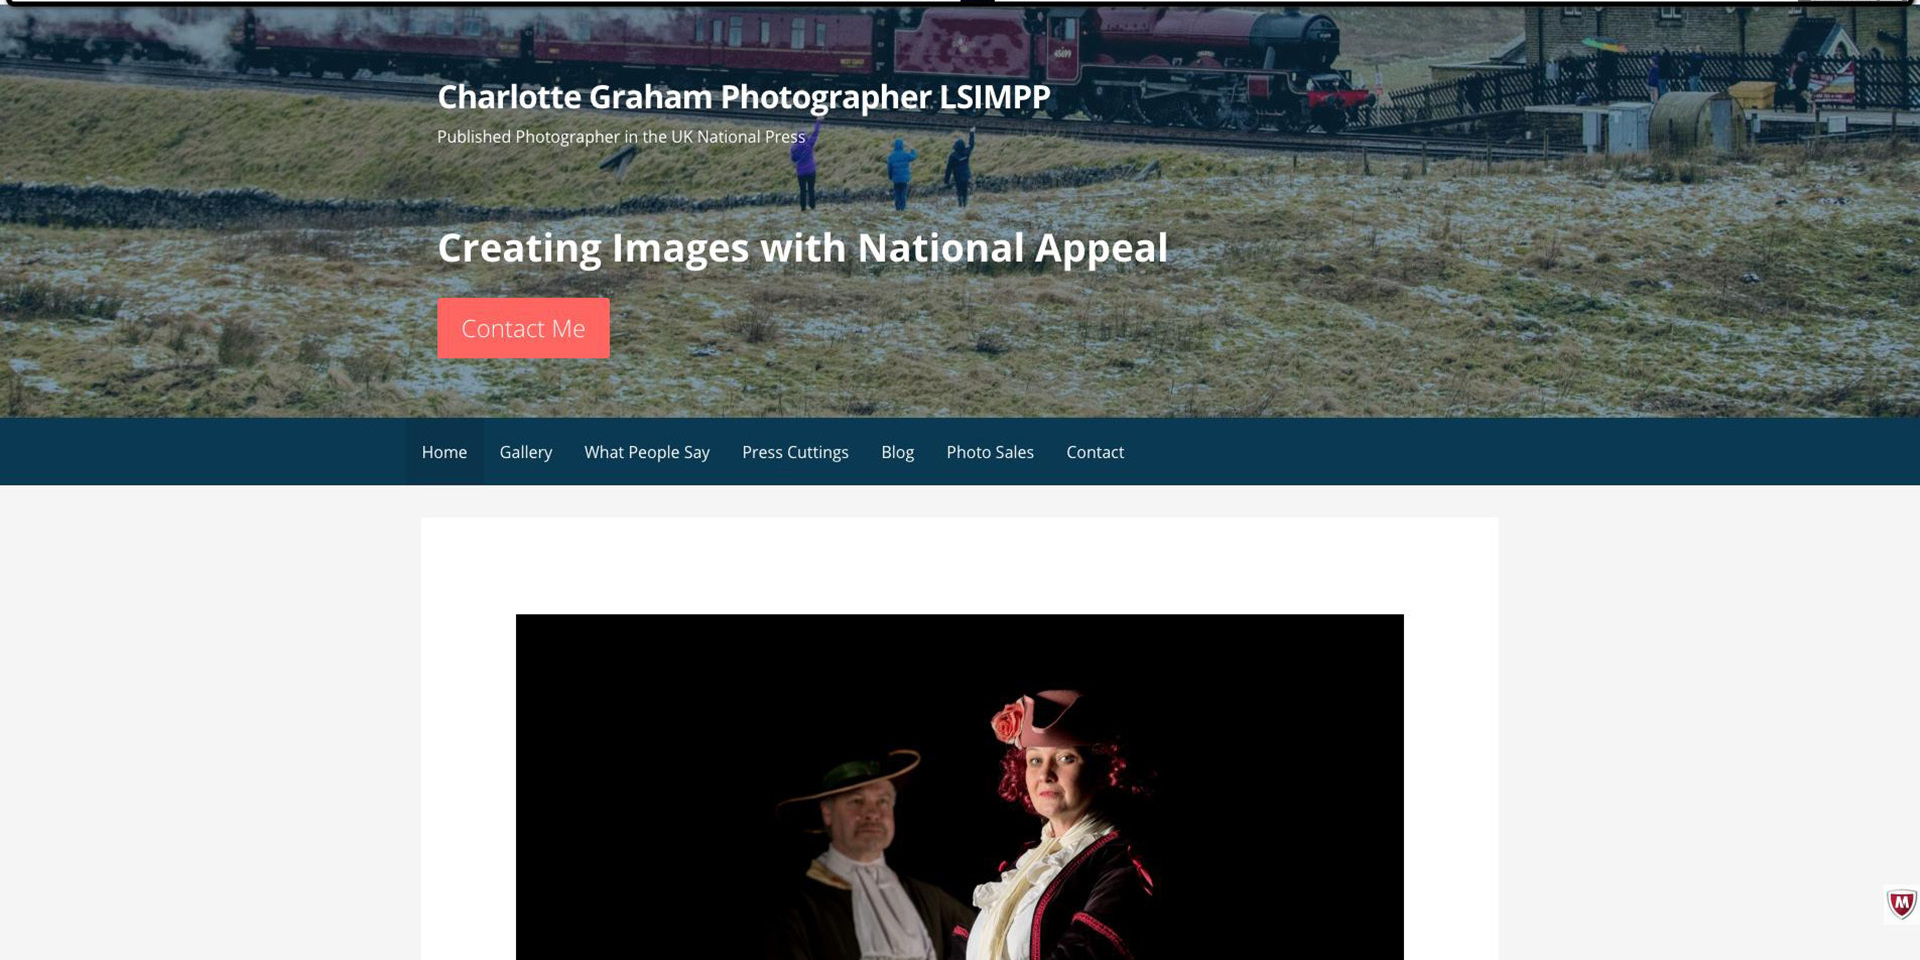 The old Charlotte Graham website design